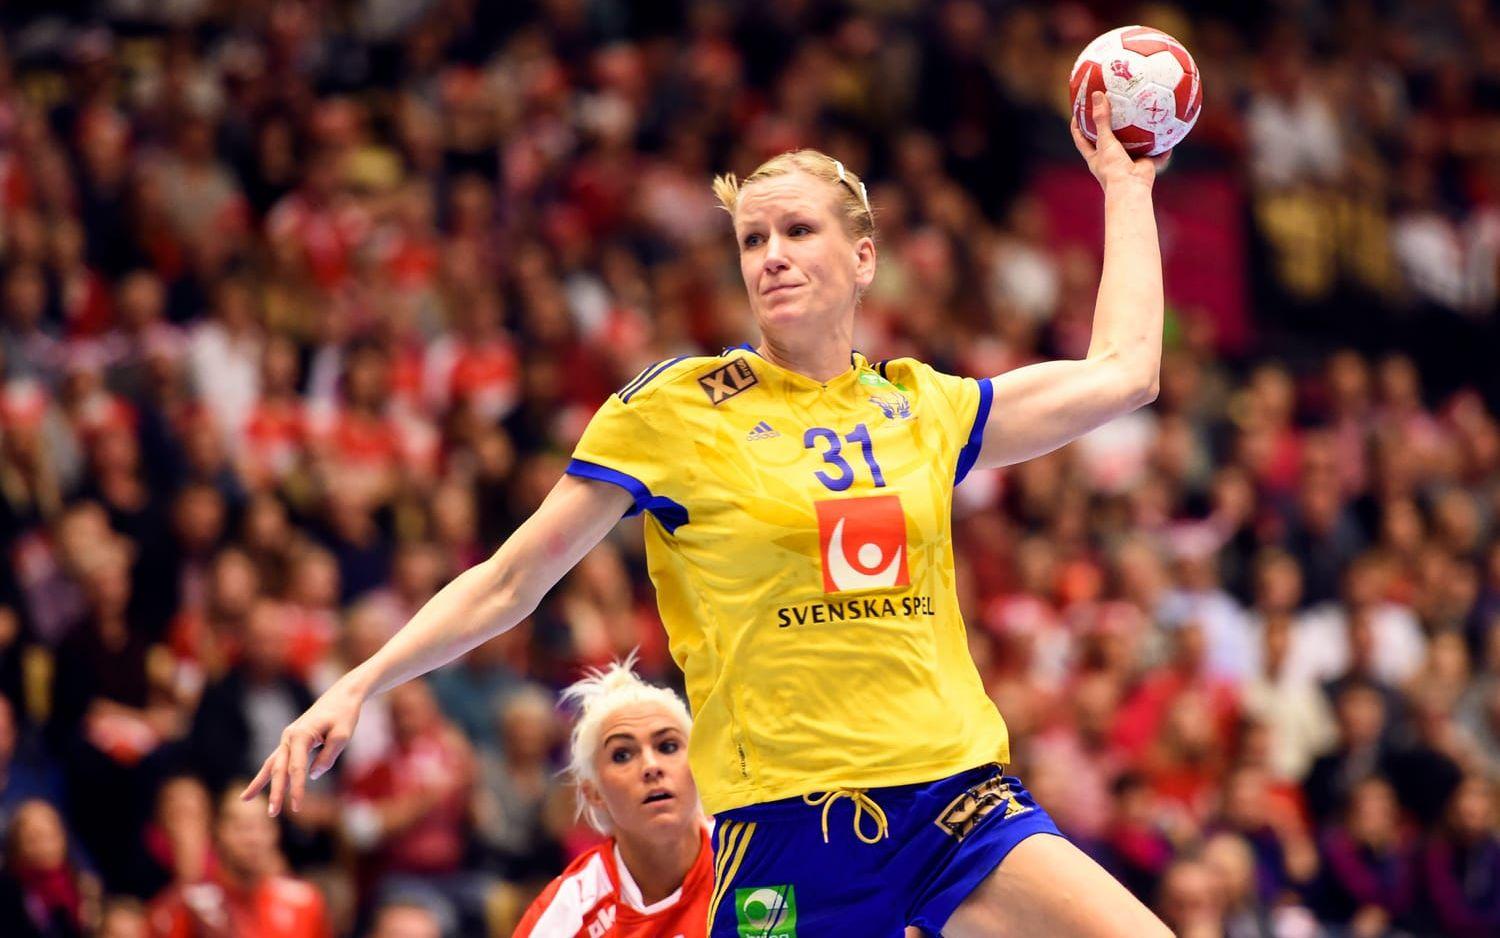 Anna-Maria Johansson, handbollsspelare, tillbaka i landslaget bara åtta månader efter förlossningen. Bildbyrån.